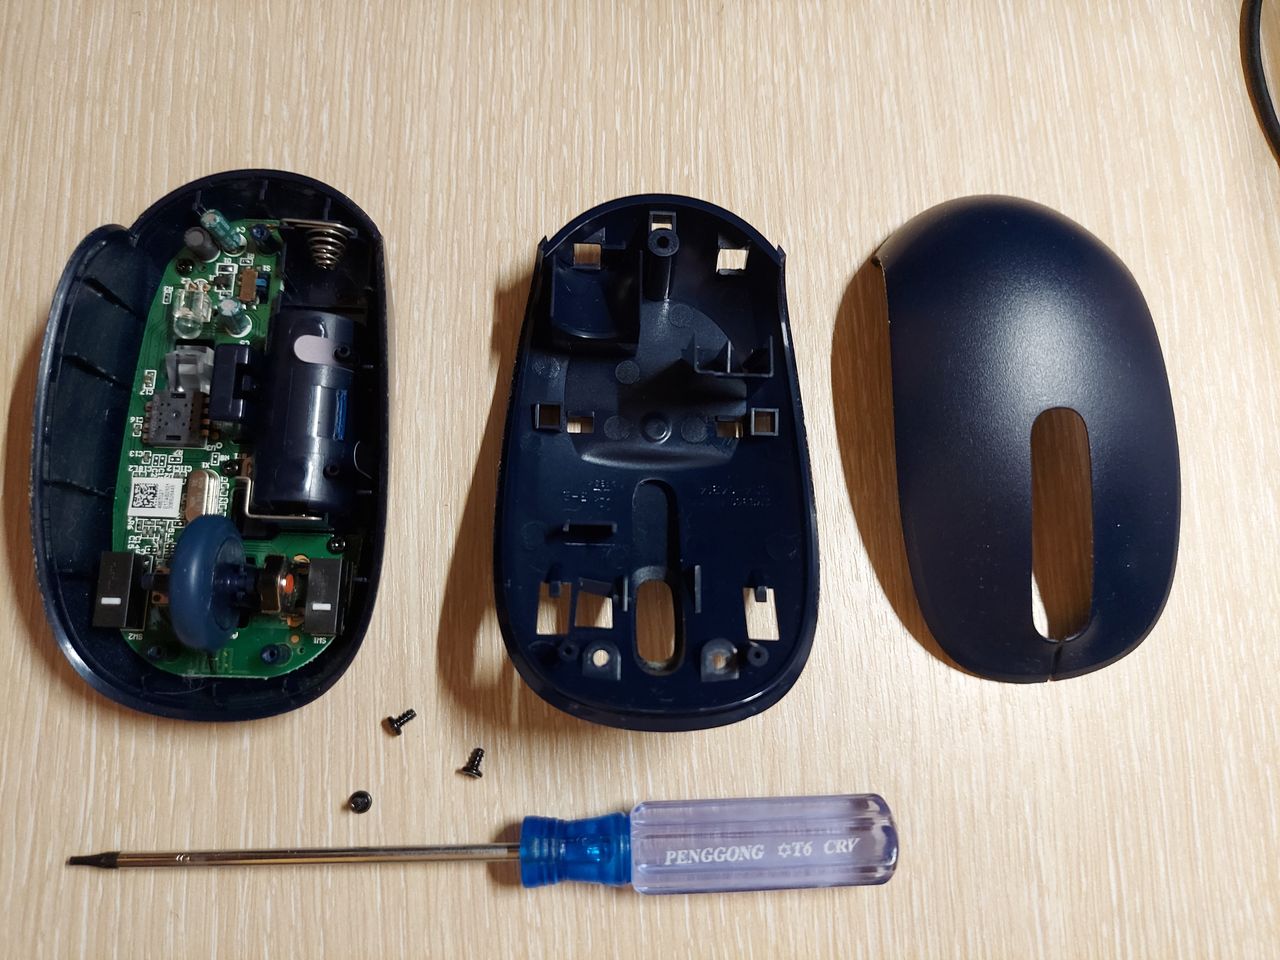 Mouse wheel repair - 04